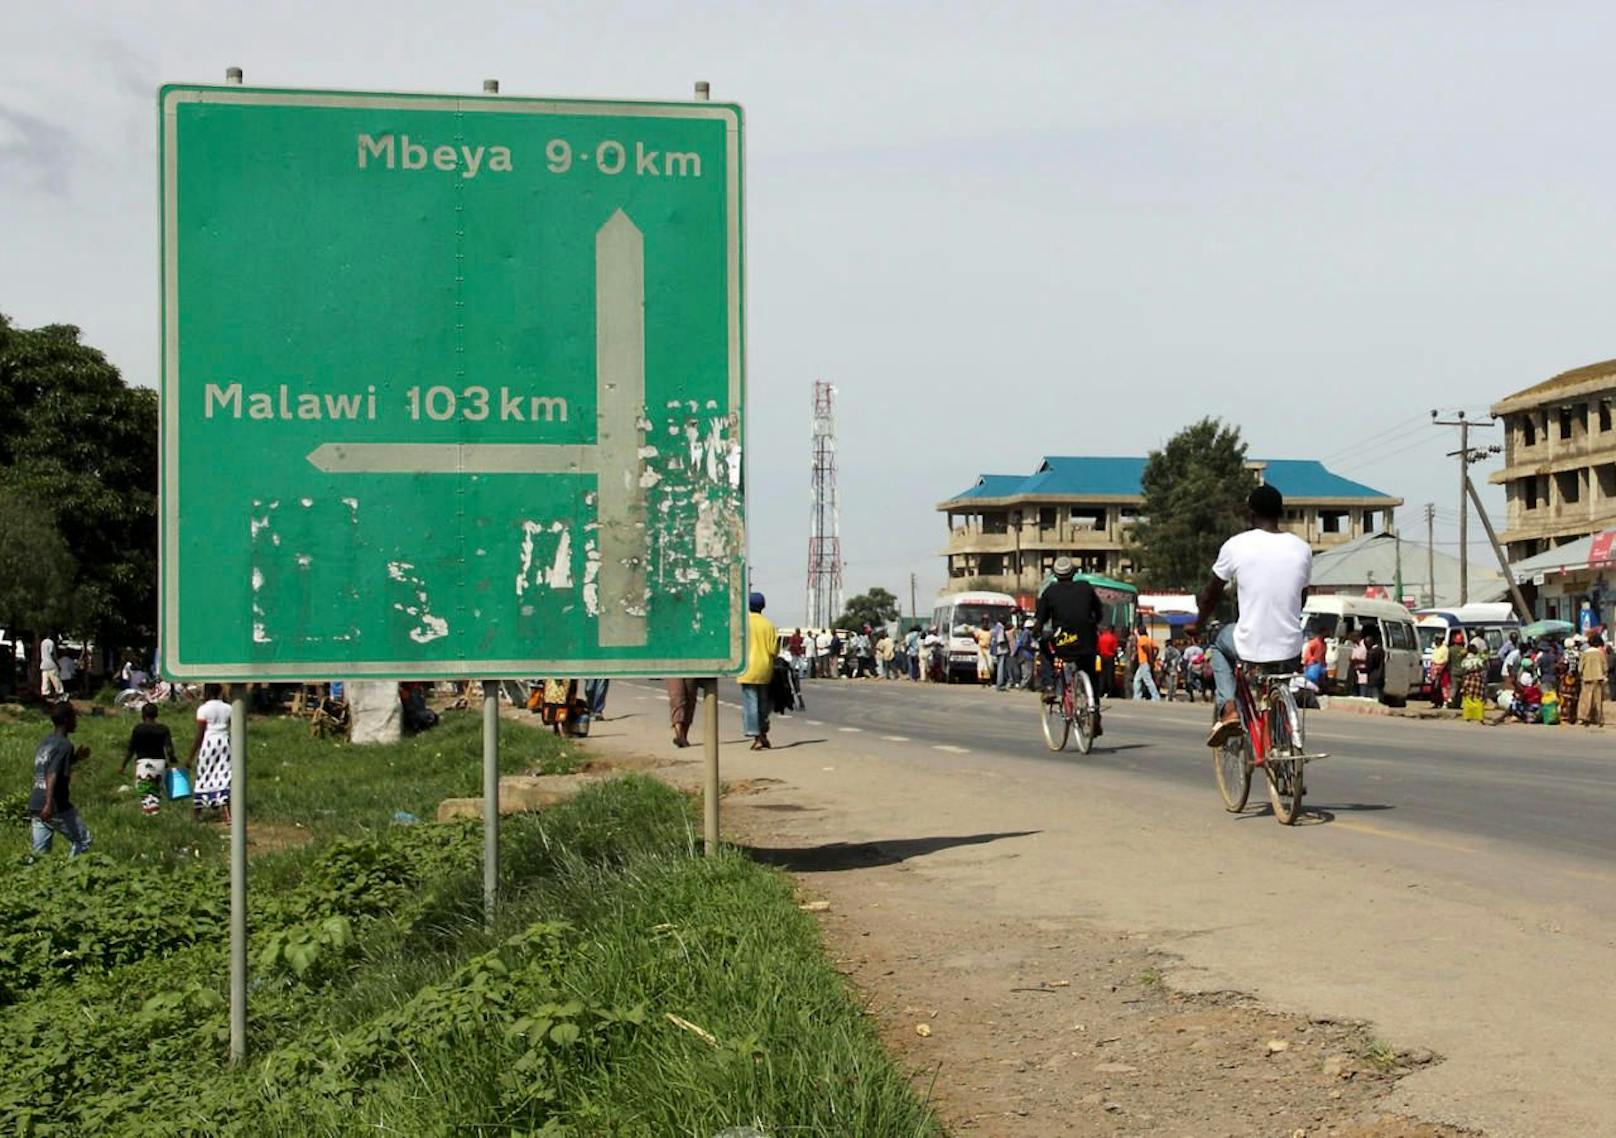 Regionalhauptstadt Mbeya ist eine der zehn größten Städte Tansanias.